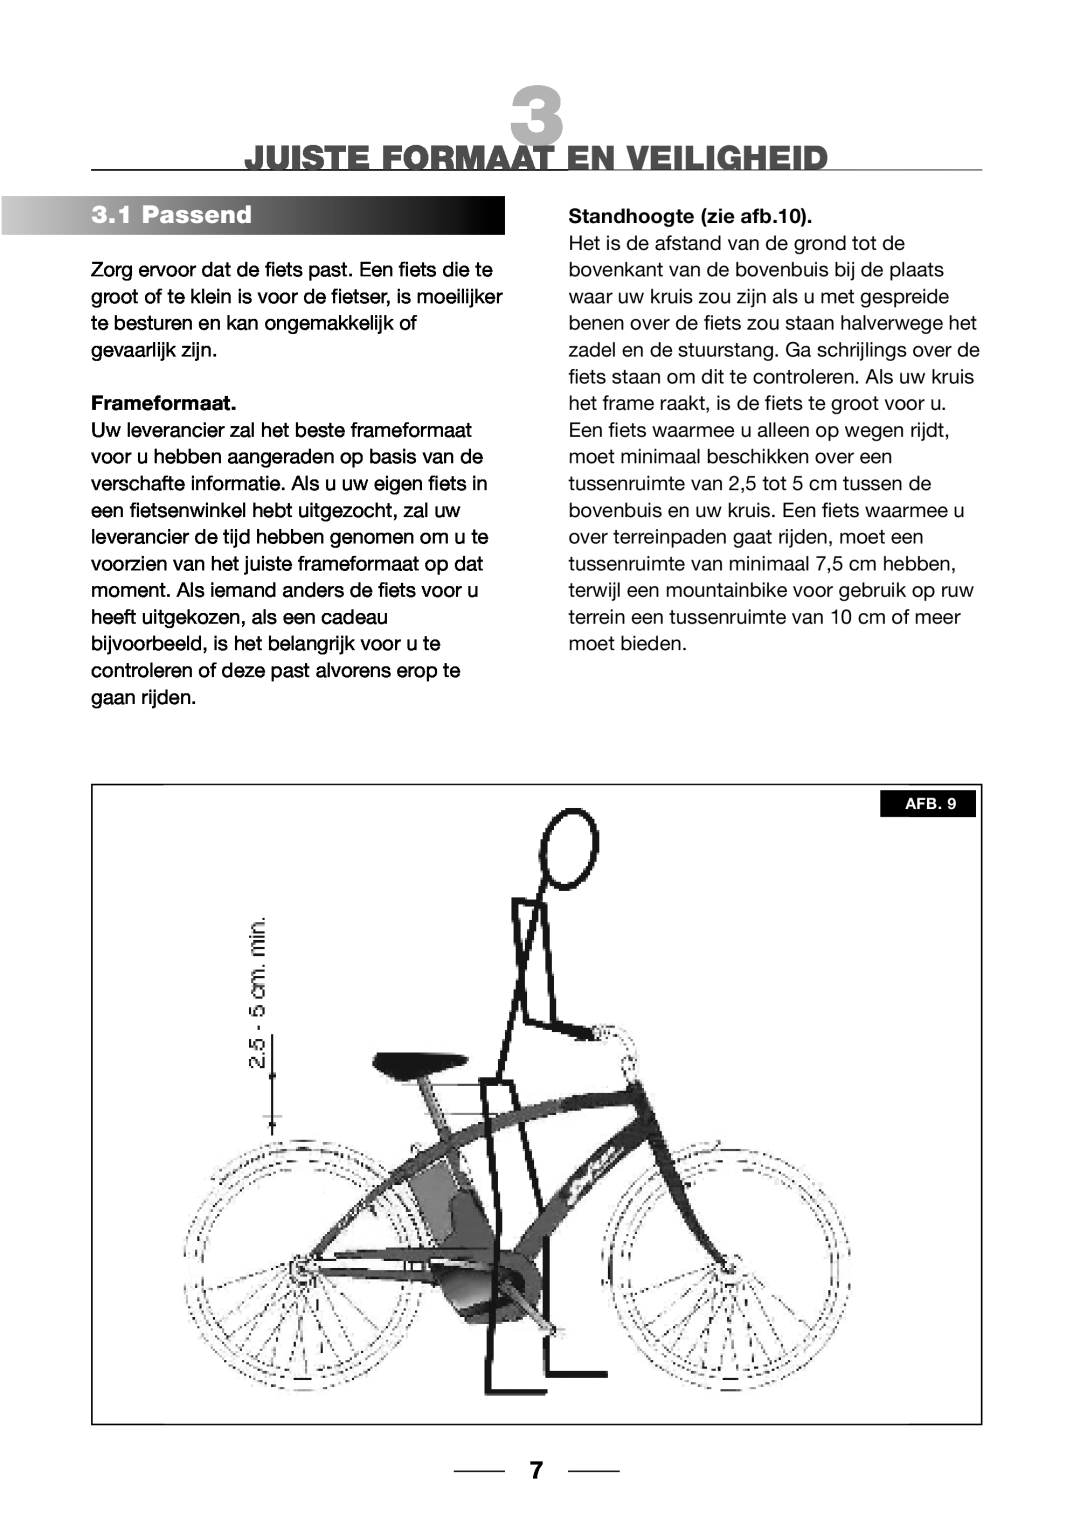 Giant 2002 Motorized Bicycle owner manual Juiste Formaat En Veiligheid, 3.1Passend, Frameformaat, Standhoogte zie afb.10 